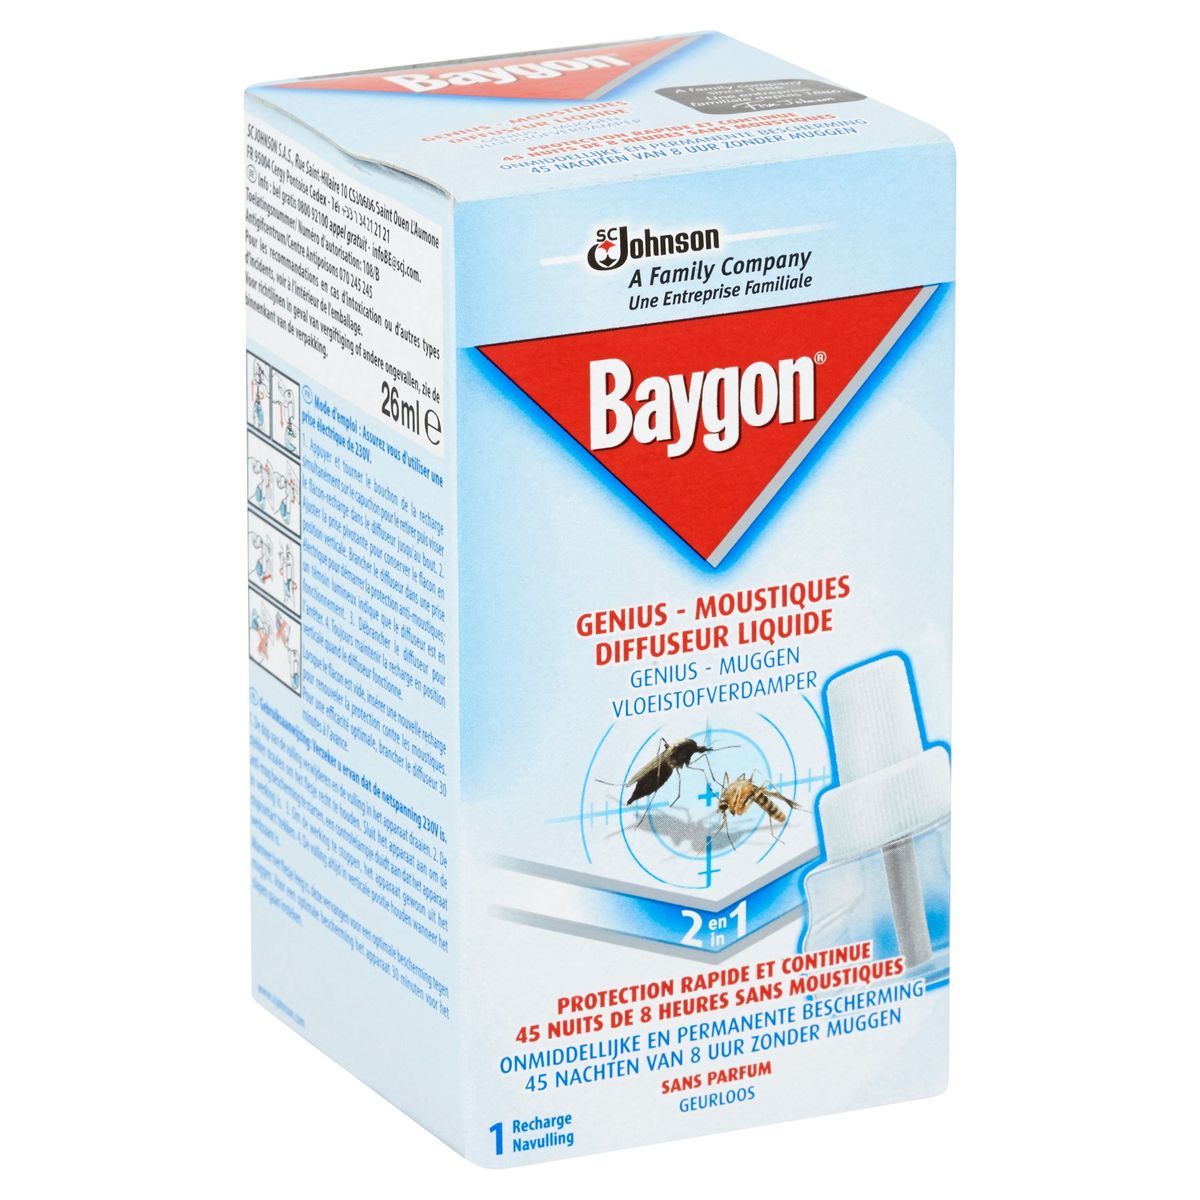 Baygon Genius - Muggen Vloeistofverdamper 2 in 1 -  Apparaat - 26 ml